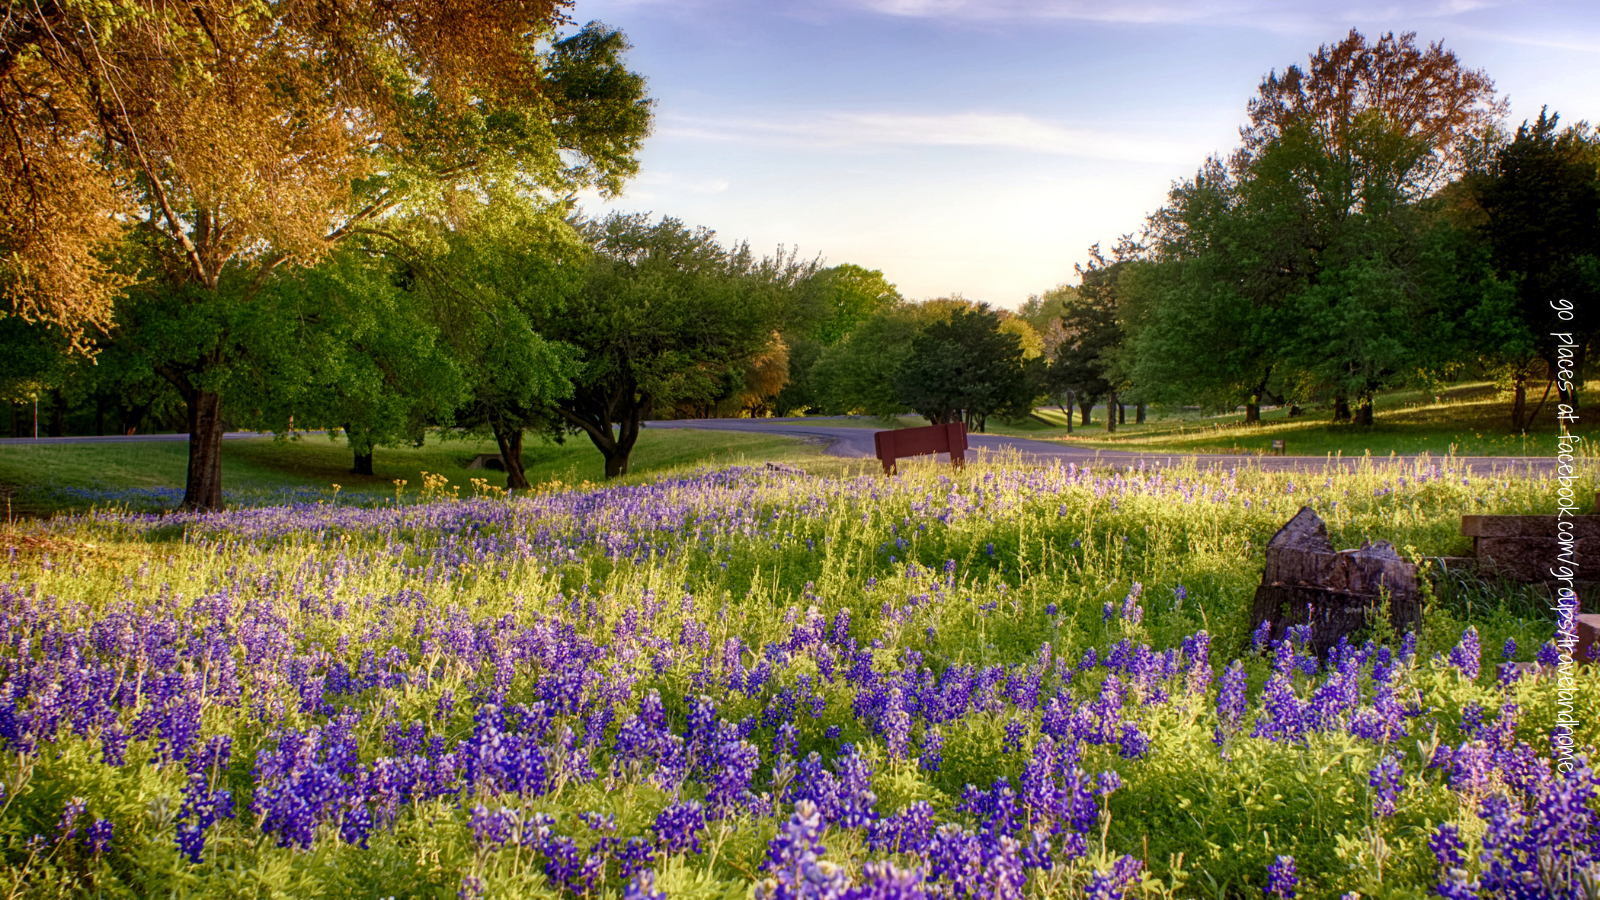 Bluebonnets Texas flowers in bloom